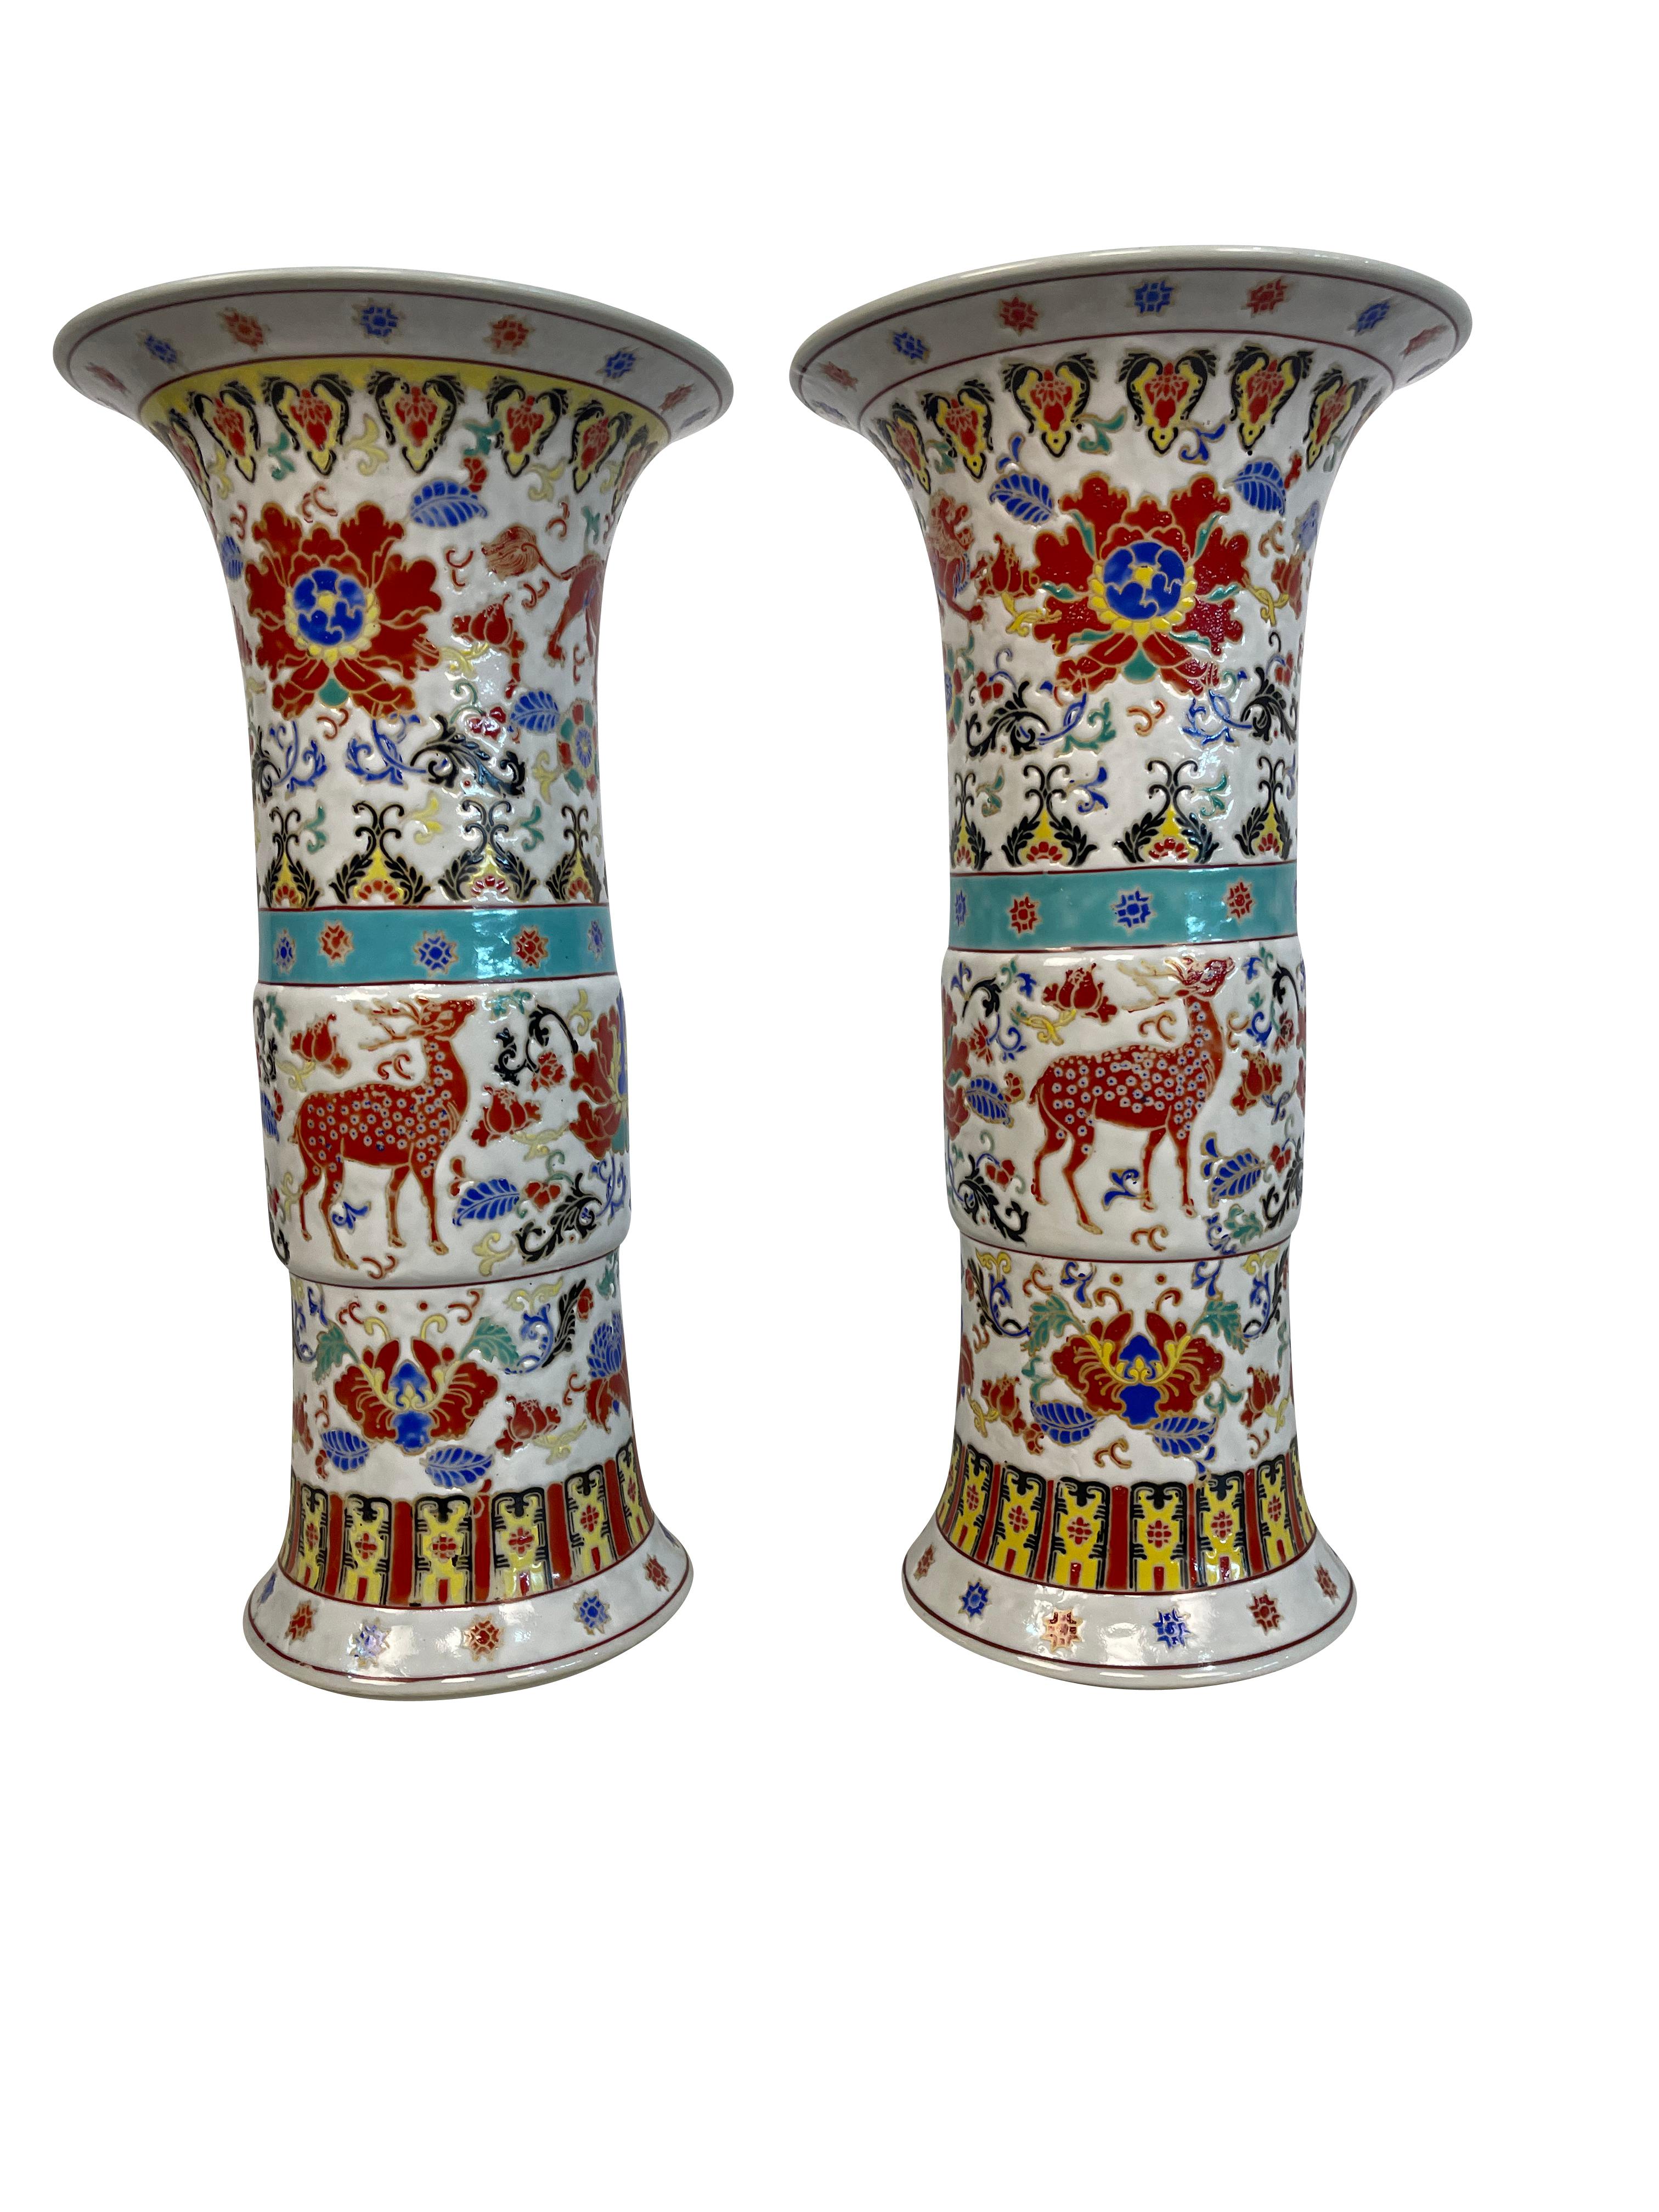 Ein Paar chinesische Porzellanvasen im Yongzheng-Stil in Hochglanzausführung in der Form Gu.  Die Vasen sind mit Hirschen, Blumen und Tiermotiven verziert.  Wunderschöne Schattierungen von Aqua, Türkis, Blau und Rost mit dekorativen Bändern in der